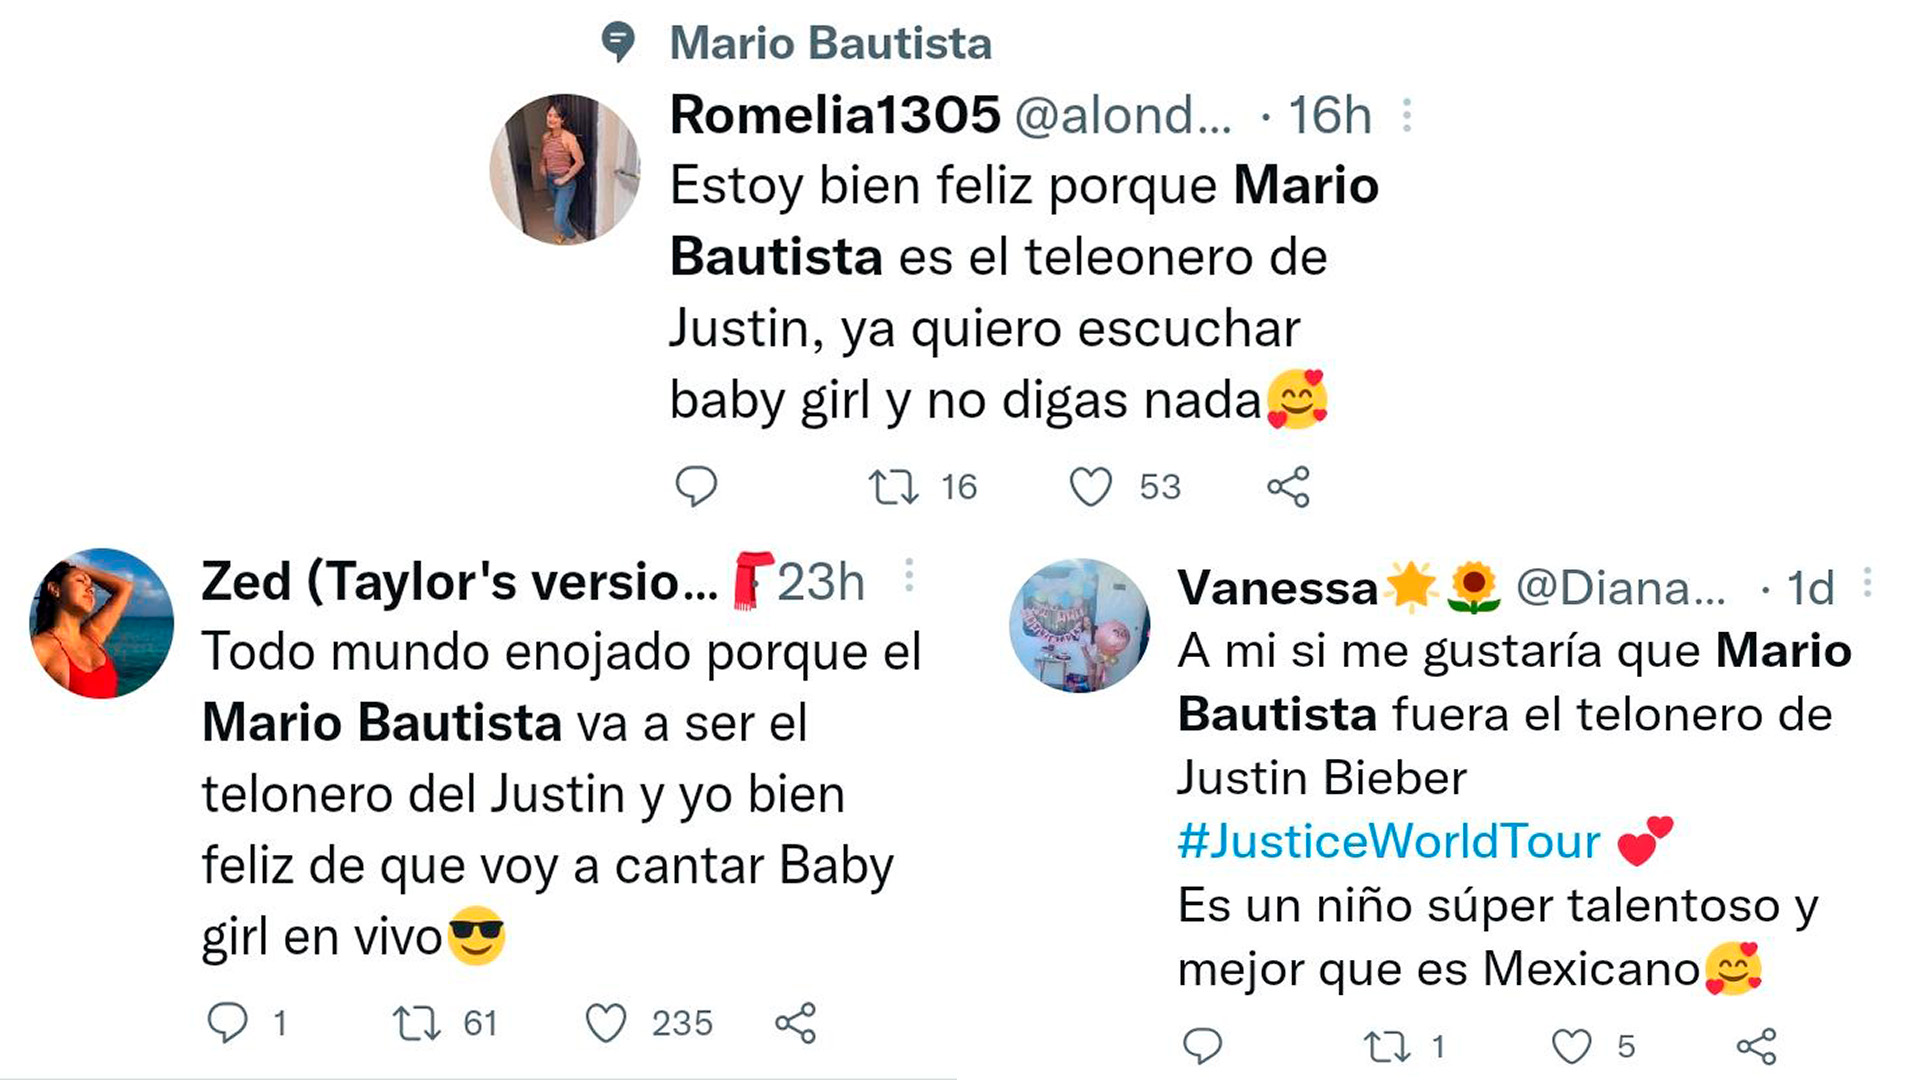 Las opiniones de internautas en Twitter sobre Mario Bautista y Justin Bieber.
Foto:Twitter